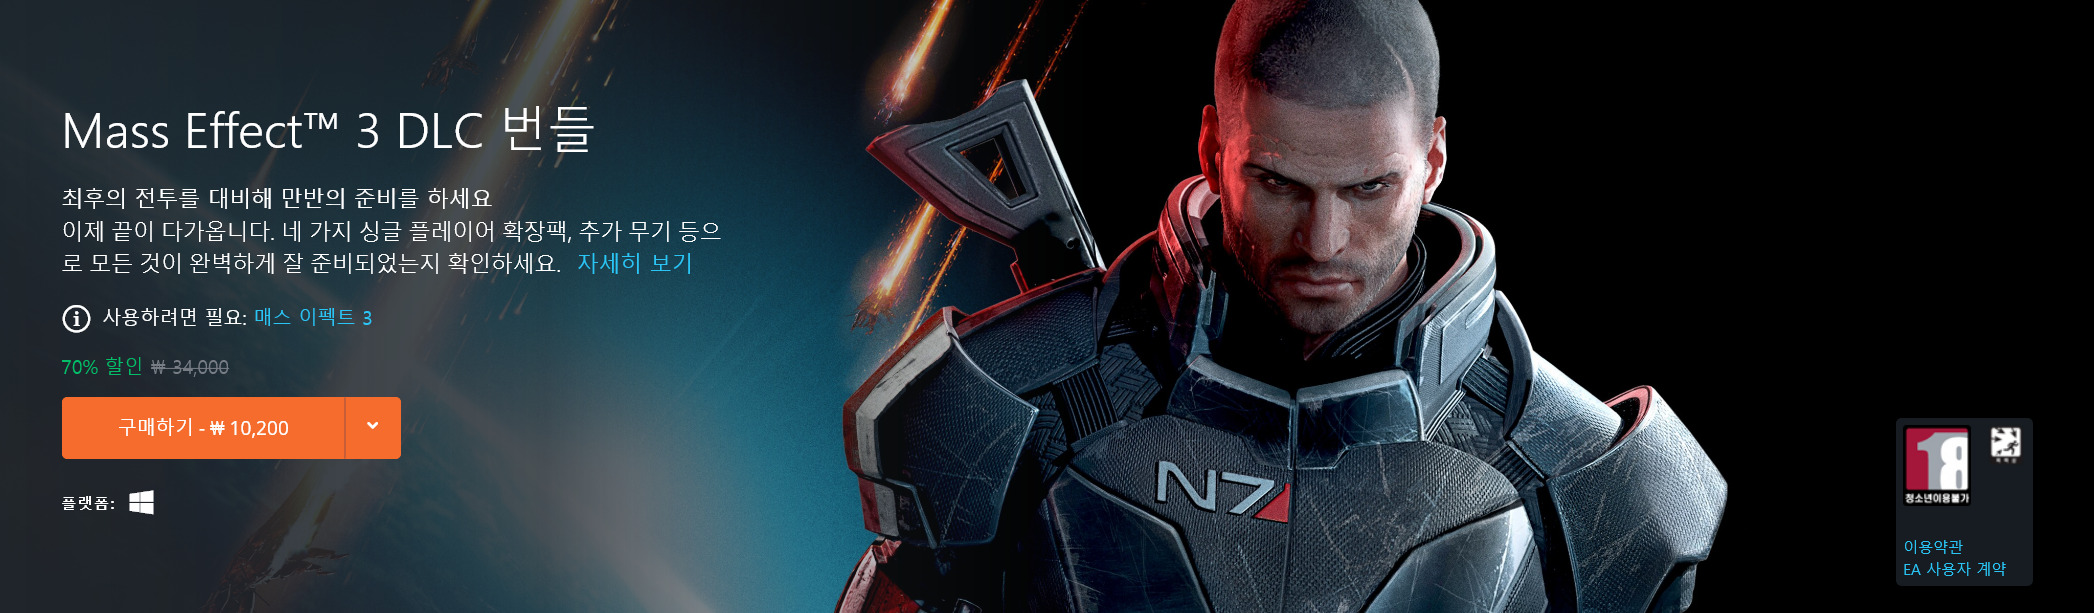 Screenshot_2020-05-12 PC 용 Mass Effect™ 3 DLC 번들.jpg